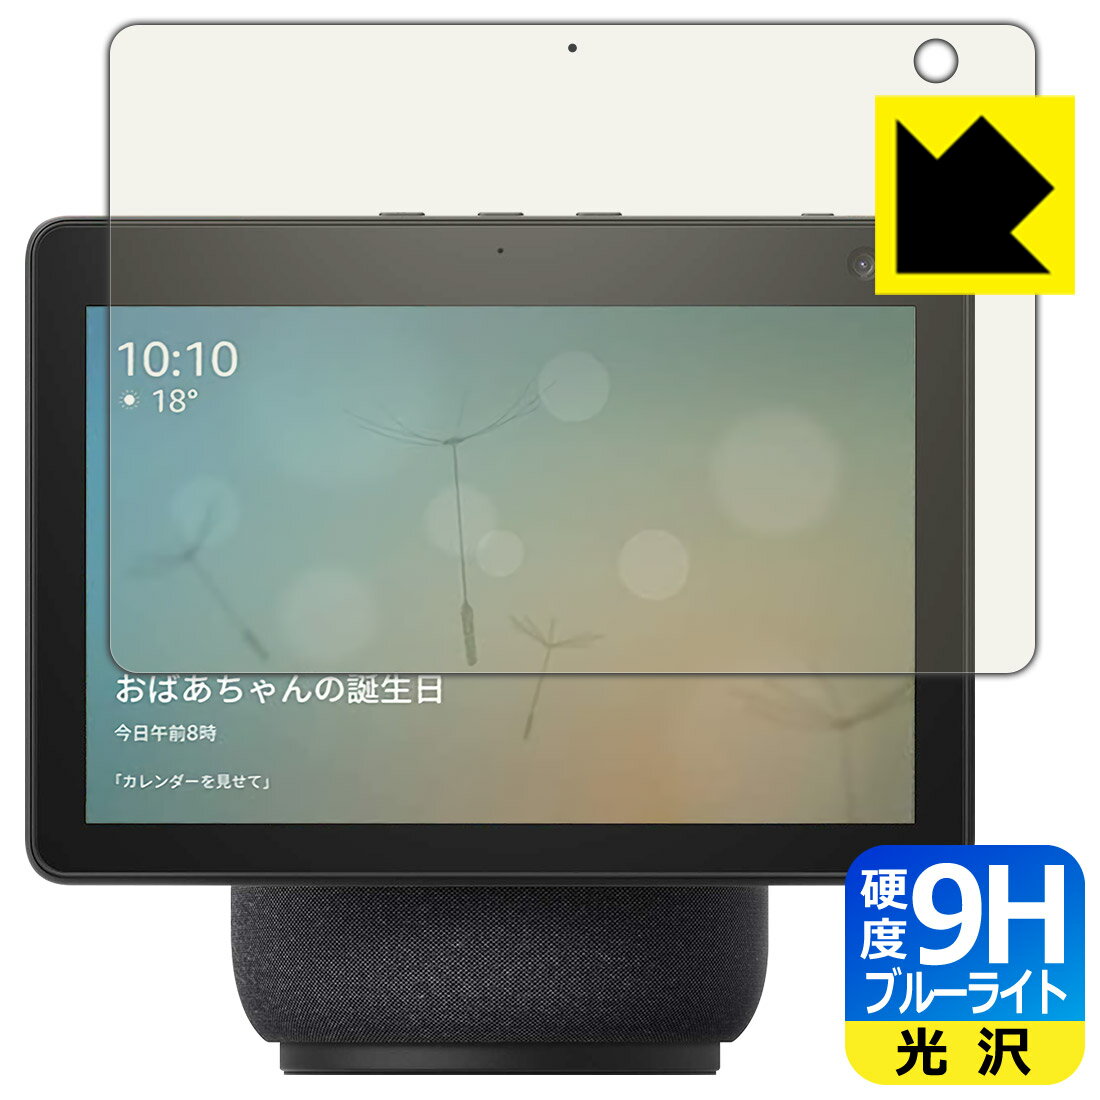 9H高硬度【ブルーライトカット】保護フィルム Amazon Echo Show 10 (第3世代・2021年4月発売モデル) 日本製 自社製造直販